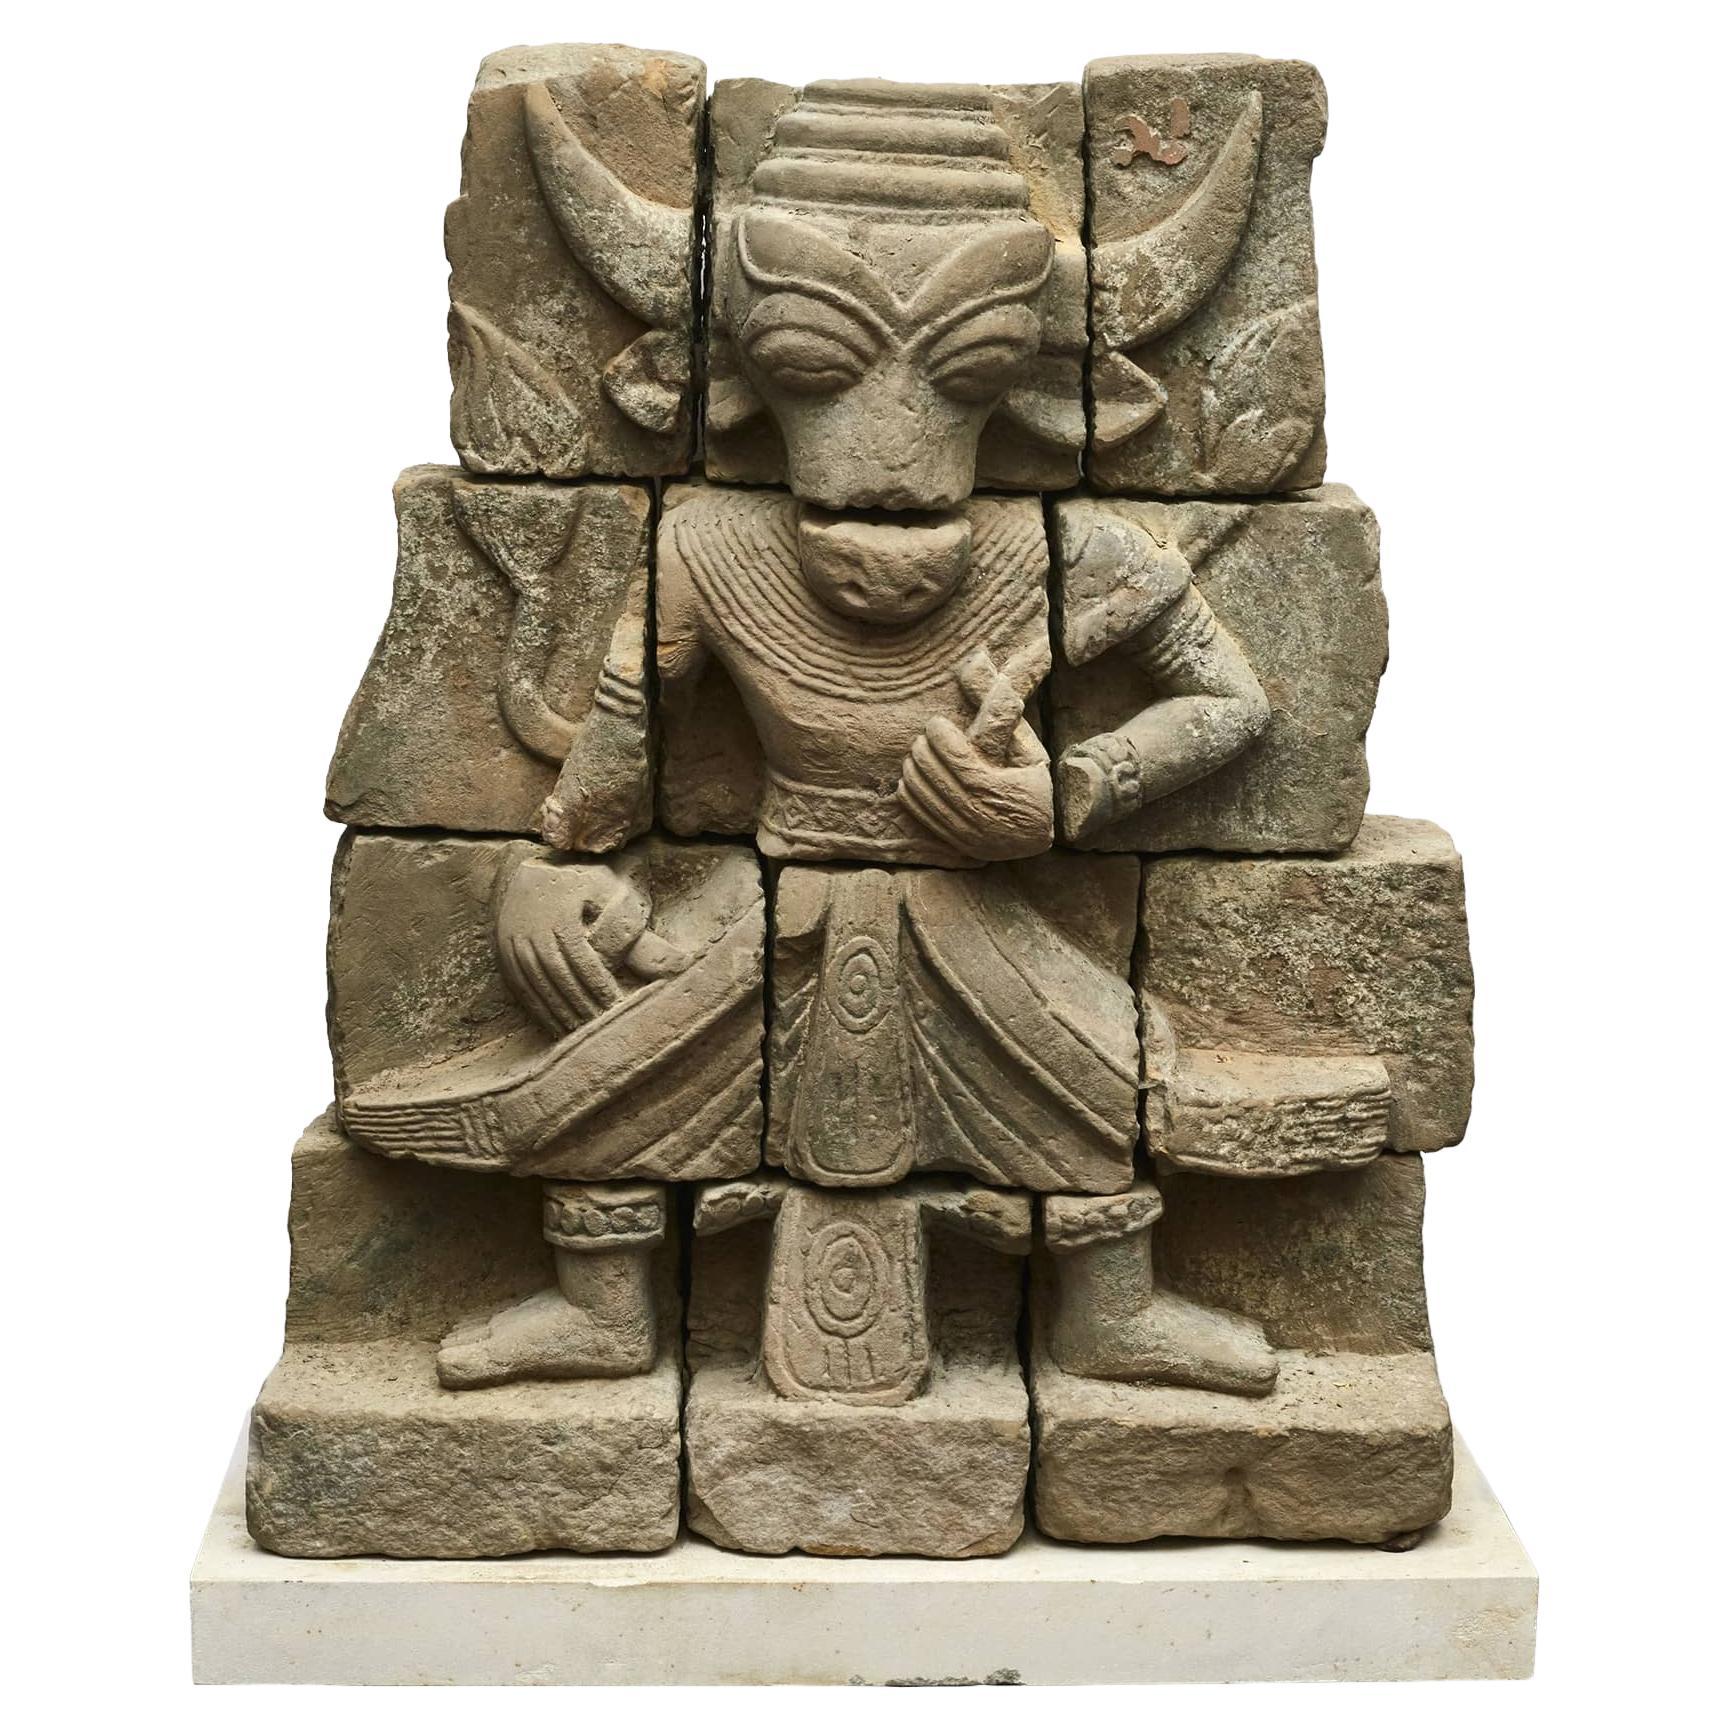 Hindi Sandsteinschnitzerei von Nandi / Nandikeshwara, 600-800 Jahre alt